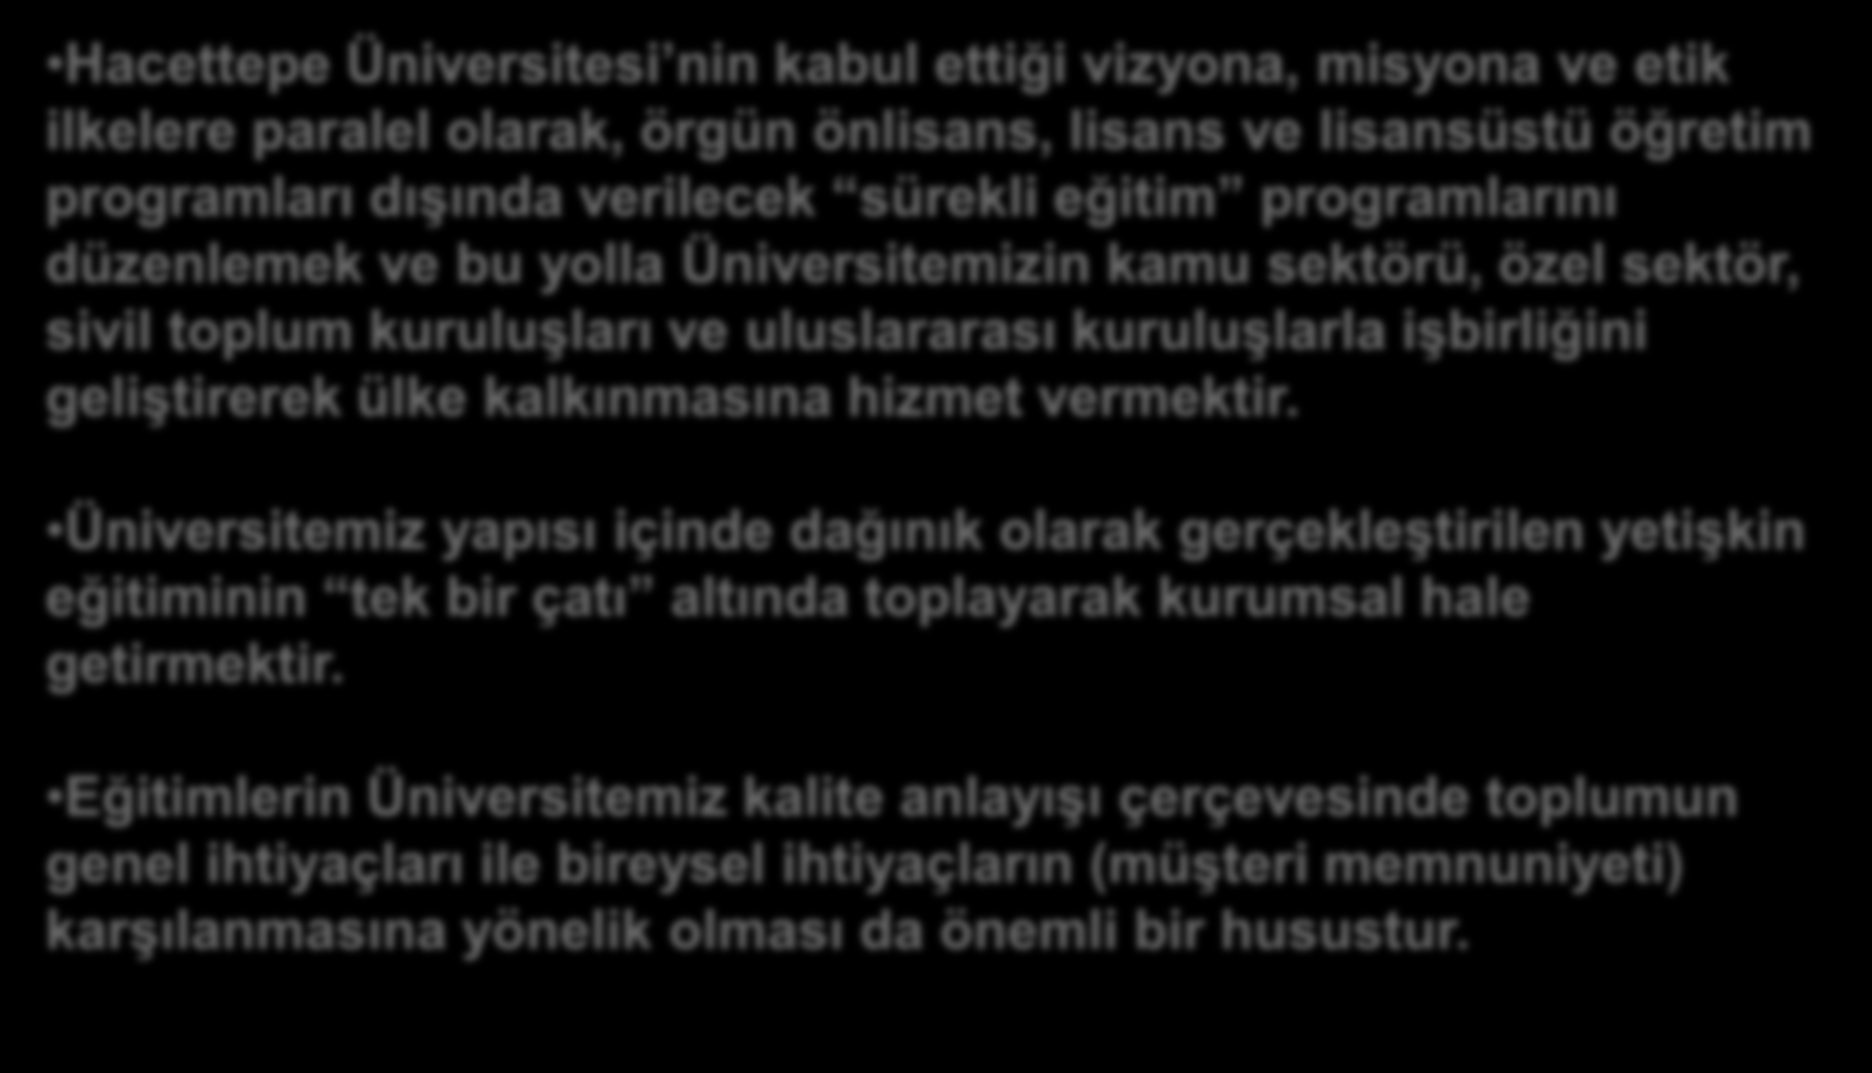 HÜSEM İN AMACI Hacettepe Üniversitesi nin kabul ettiği vizyona, misyona ve etik ilkelere paralel olarak, örgün önlisans, lisans ve lisansüstü öğretim programları dışında verilecek sürekli eğitim